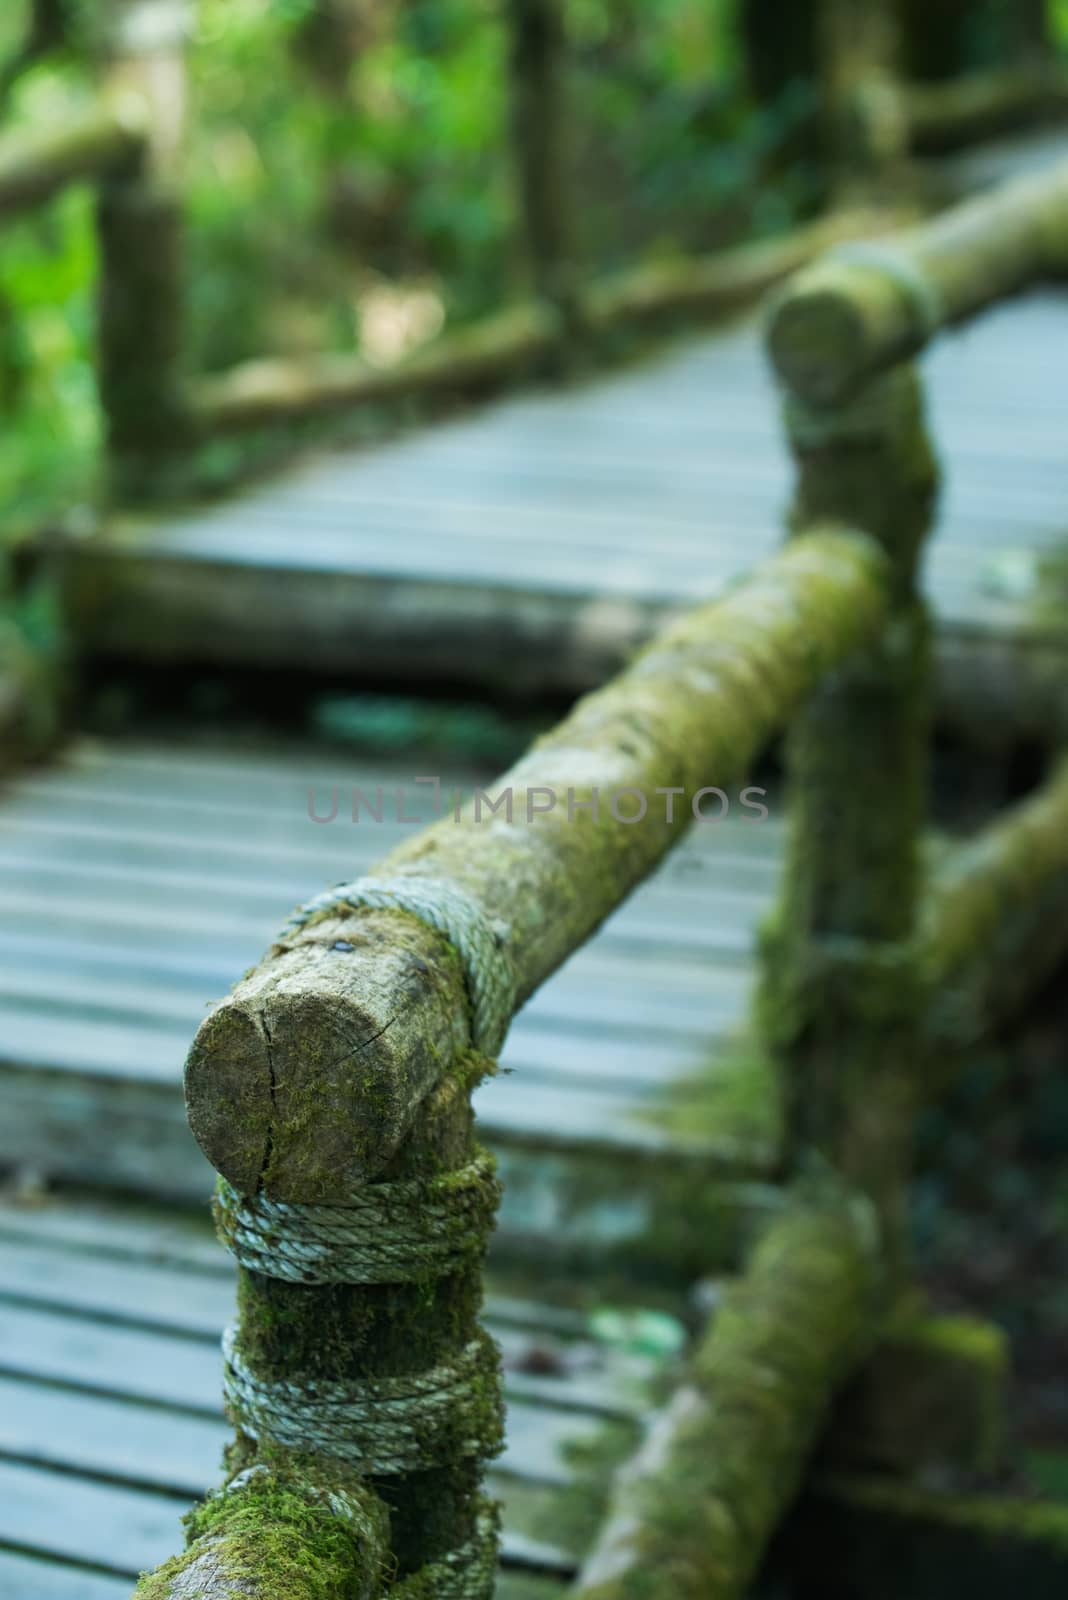 Wooden bridge in tropical rain forest by jakgree